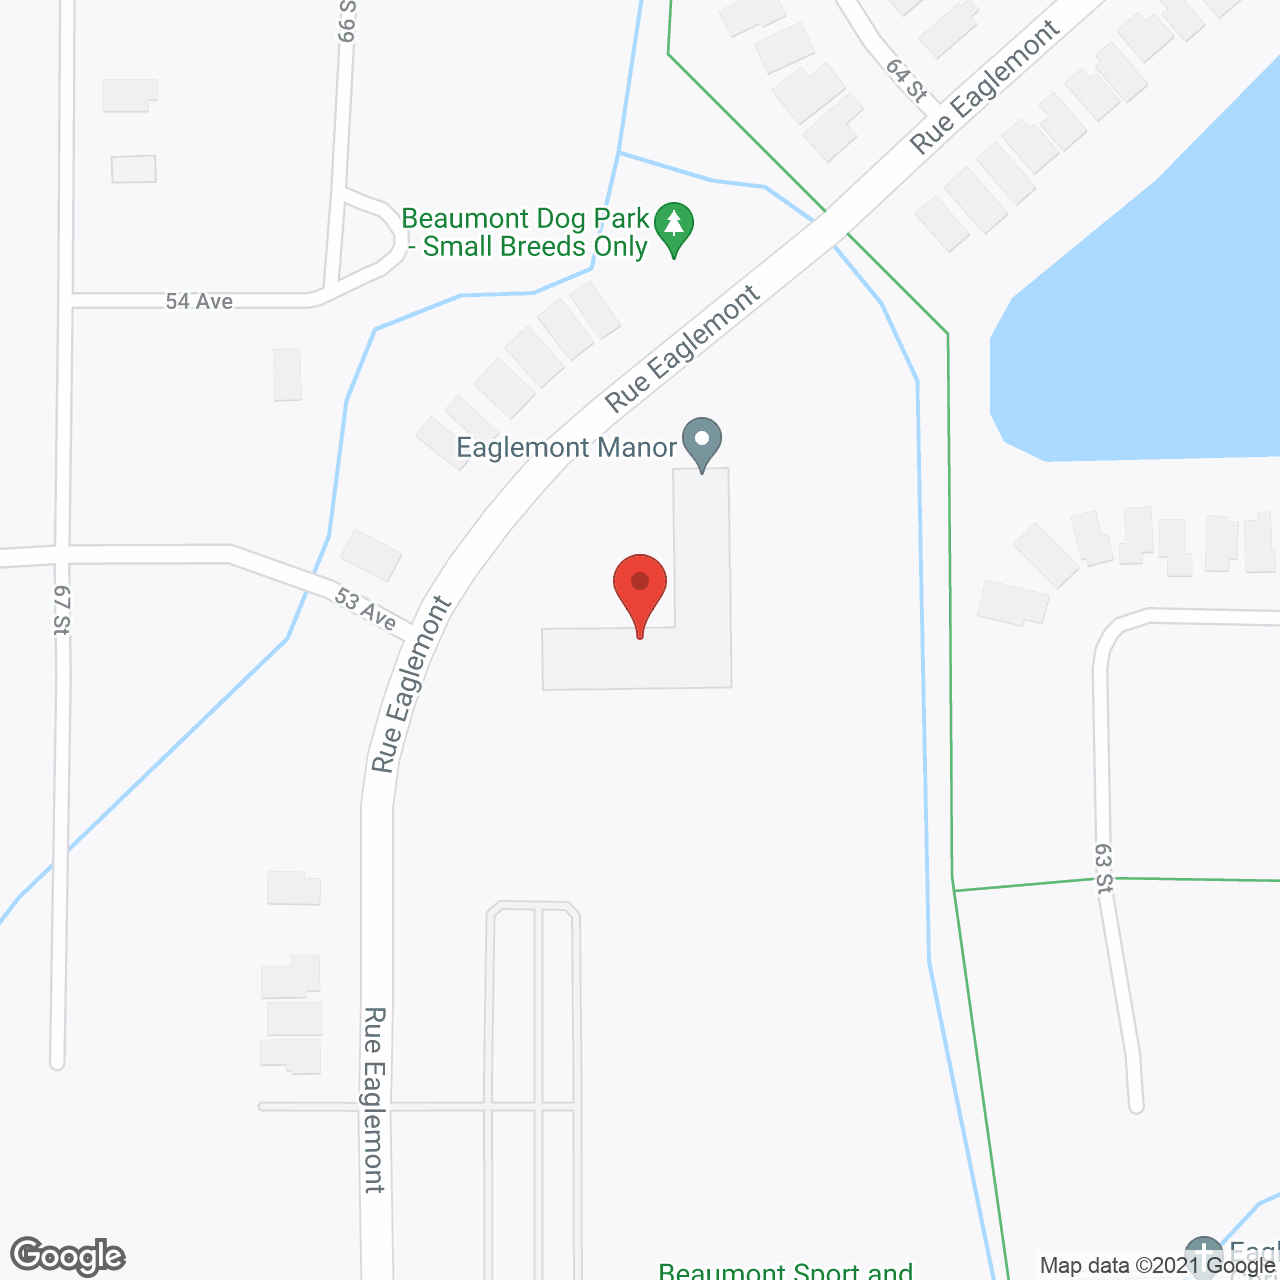 Eaglemont Manor in google map